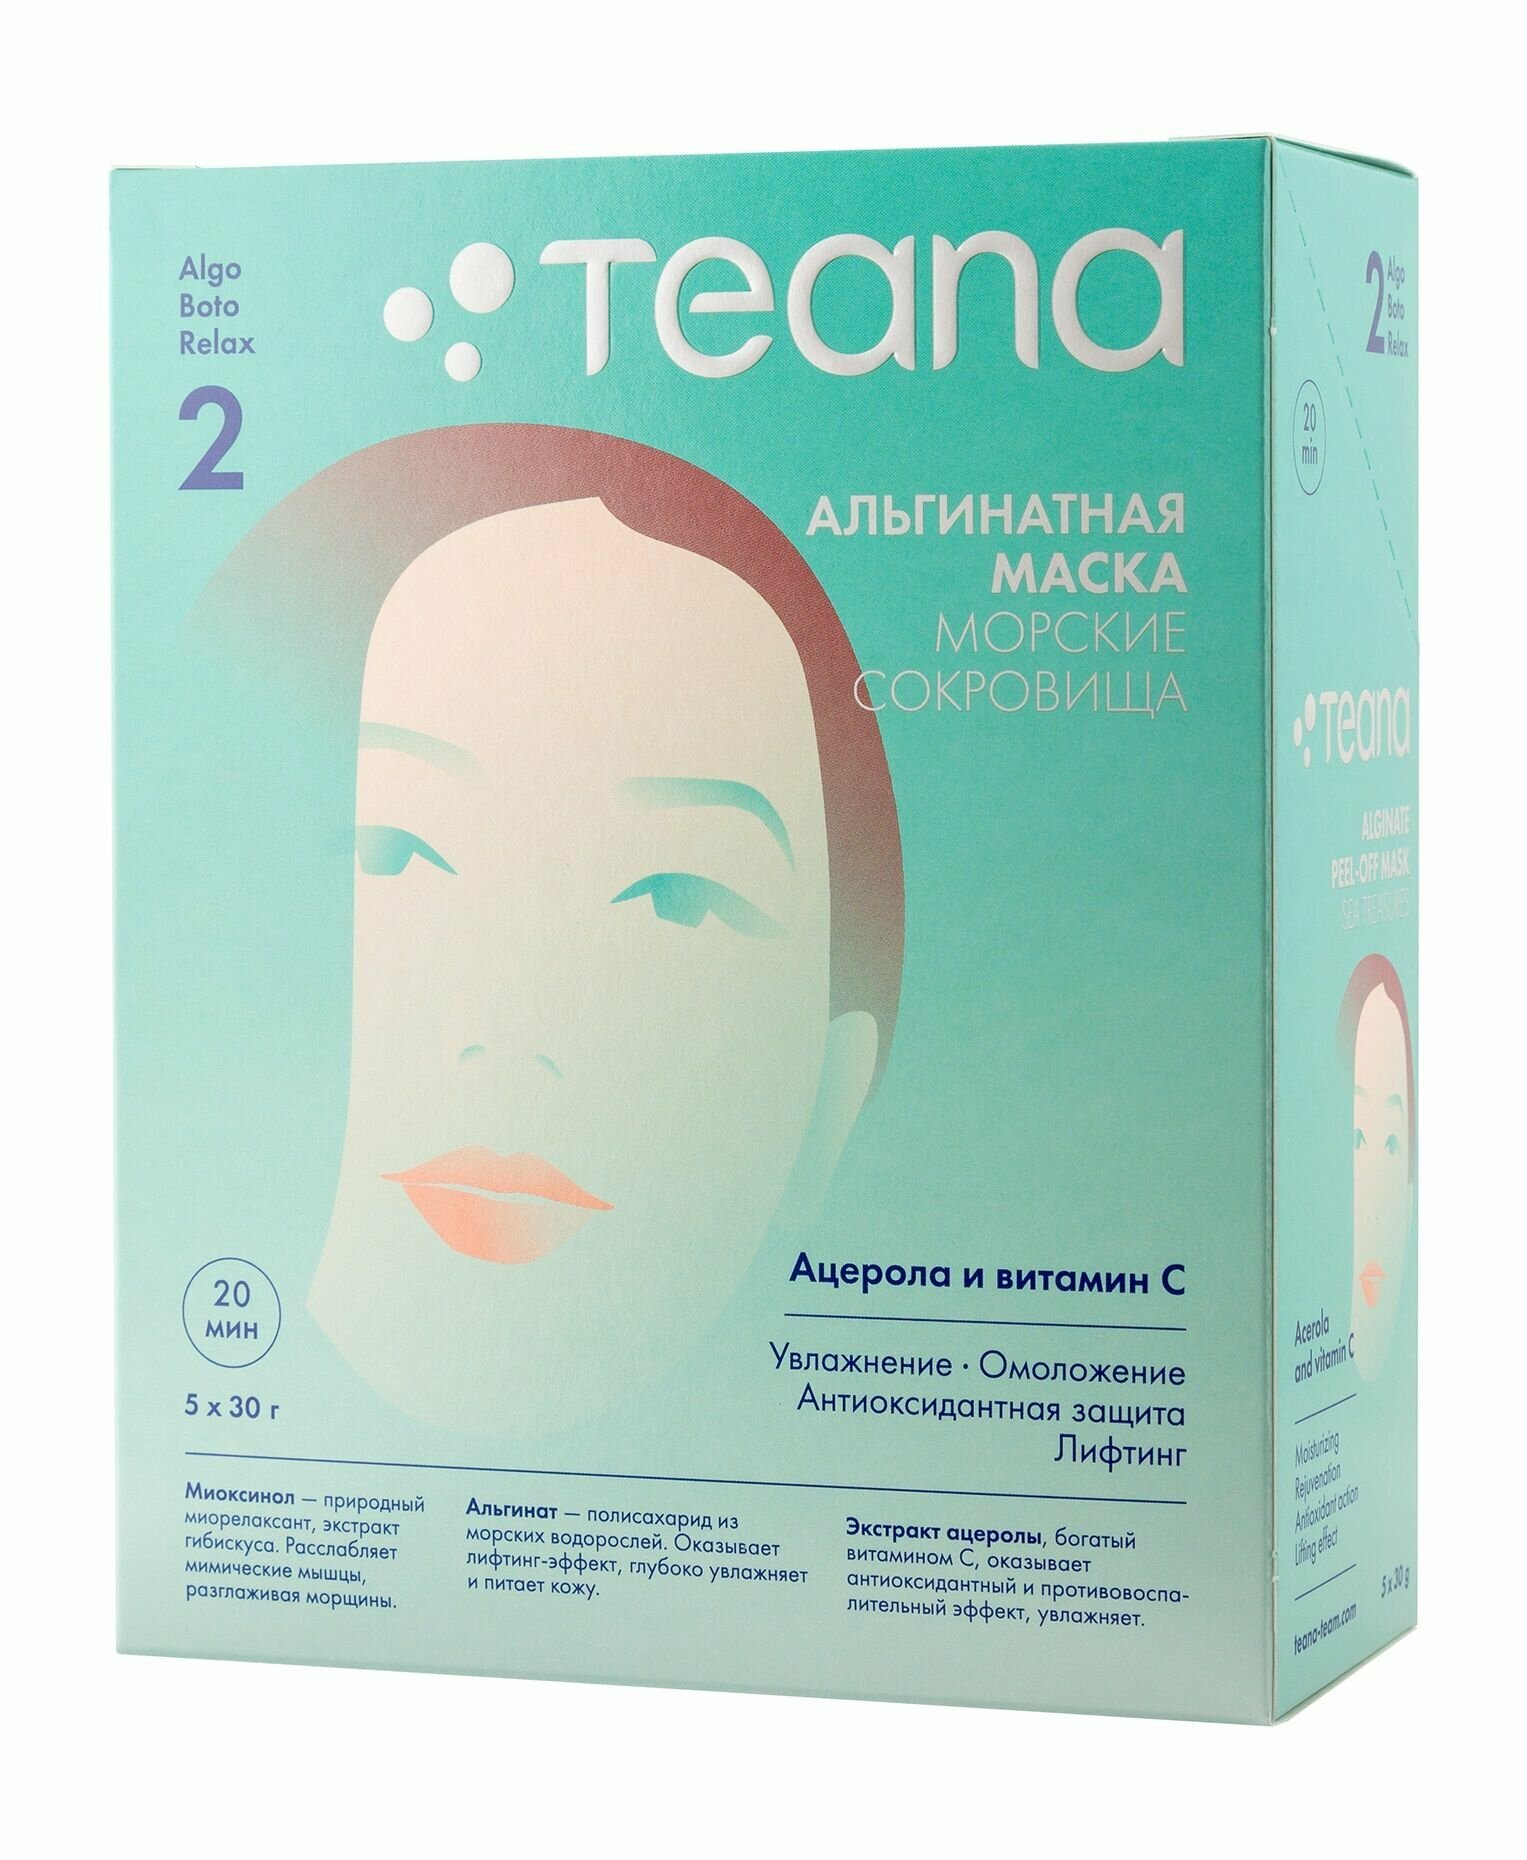 Увлажняющая антиоксидантная маска для лица с витамином С и ацеролой / Teana Альгинатная маска Морские сокровища